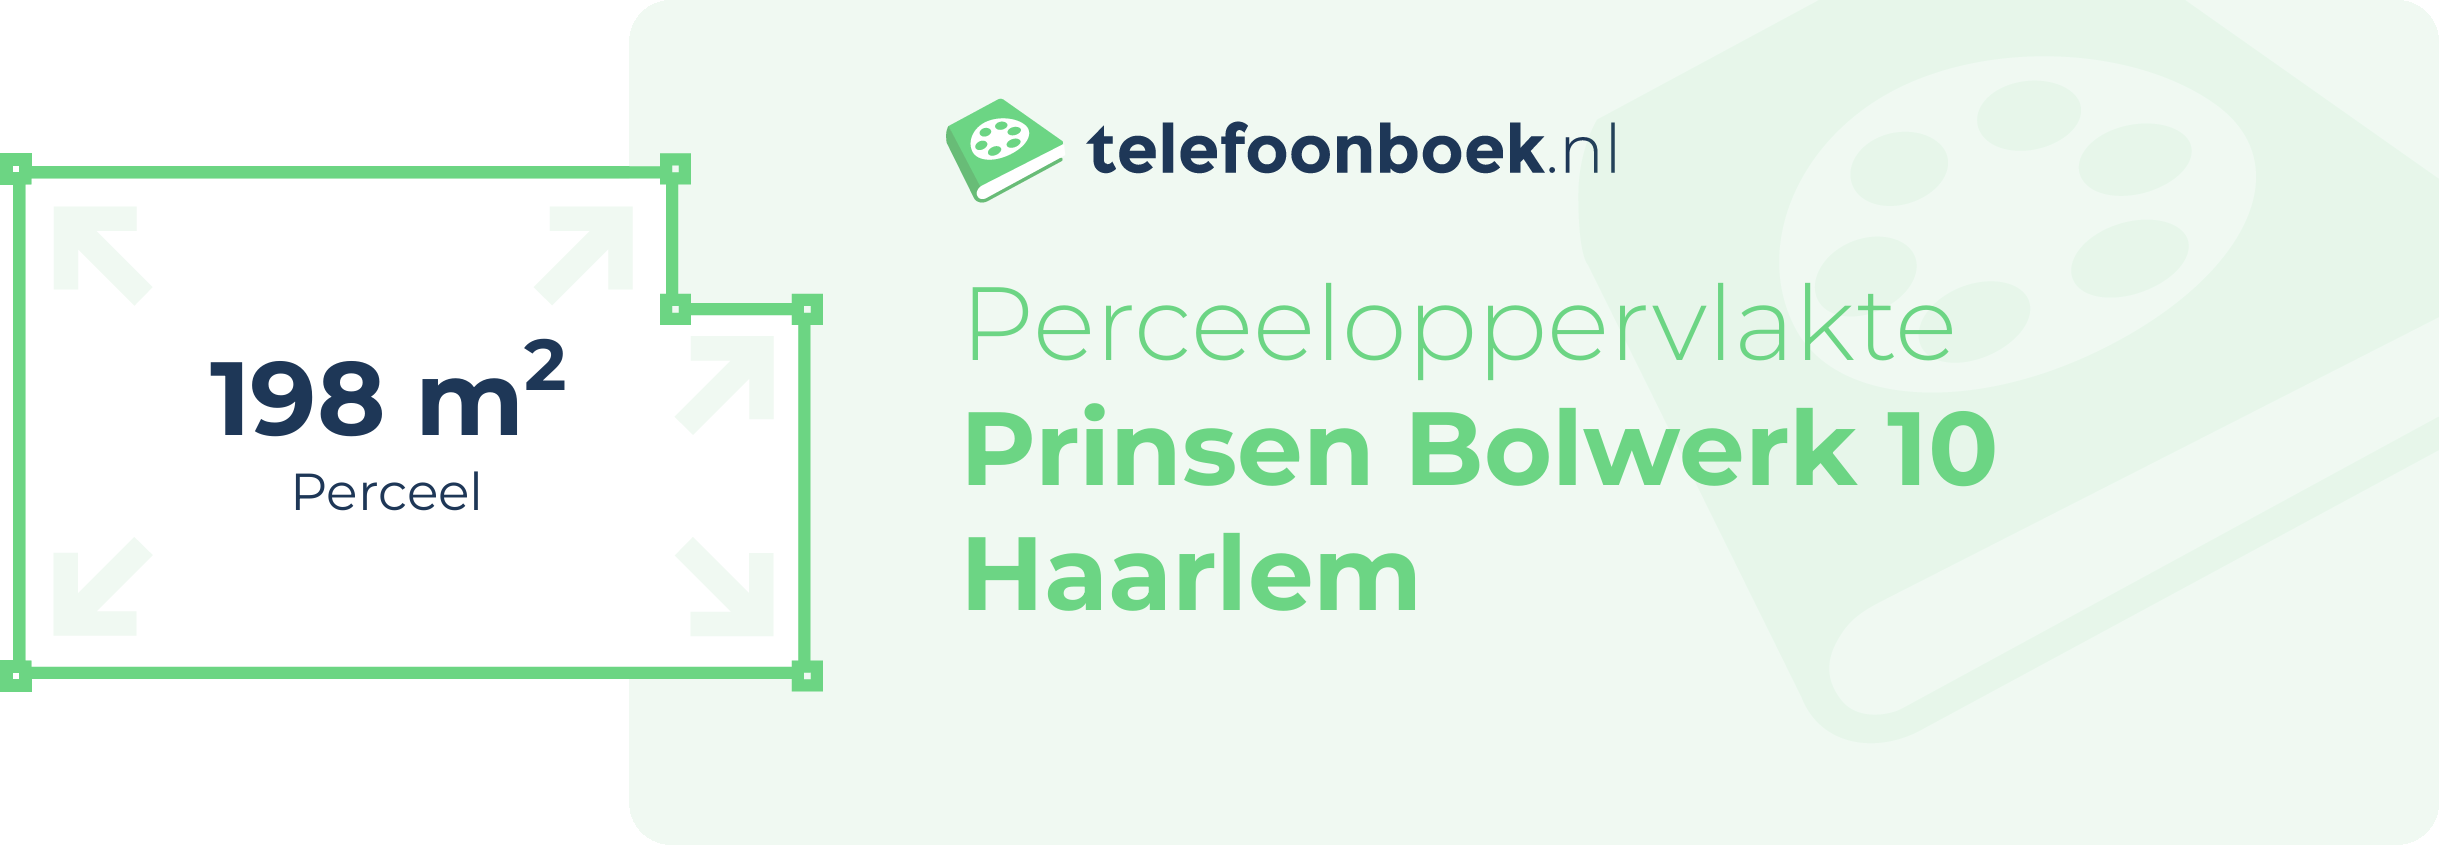 Perceeloppervlakte Prinsen Bolwerk 10 Haarlem